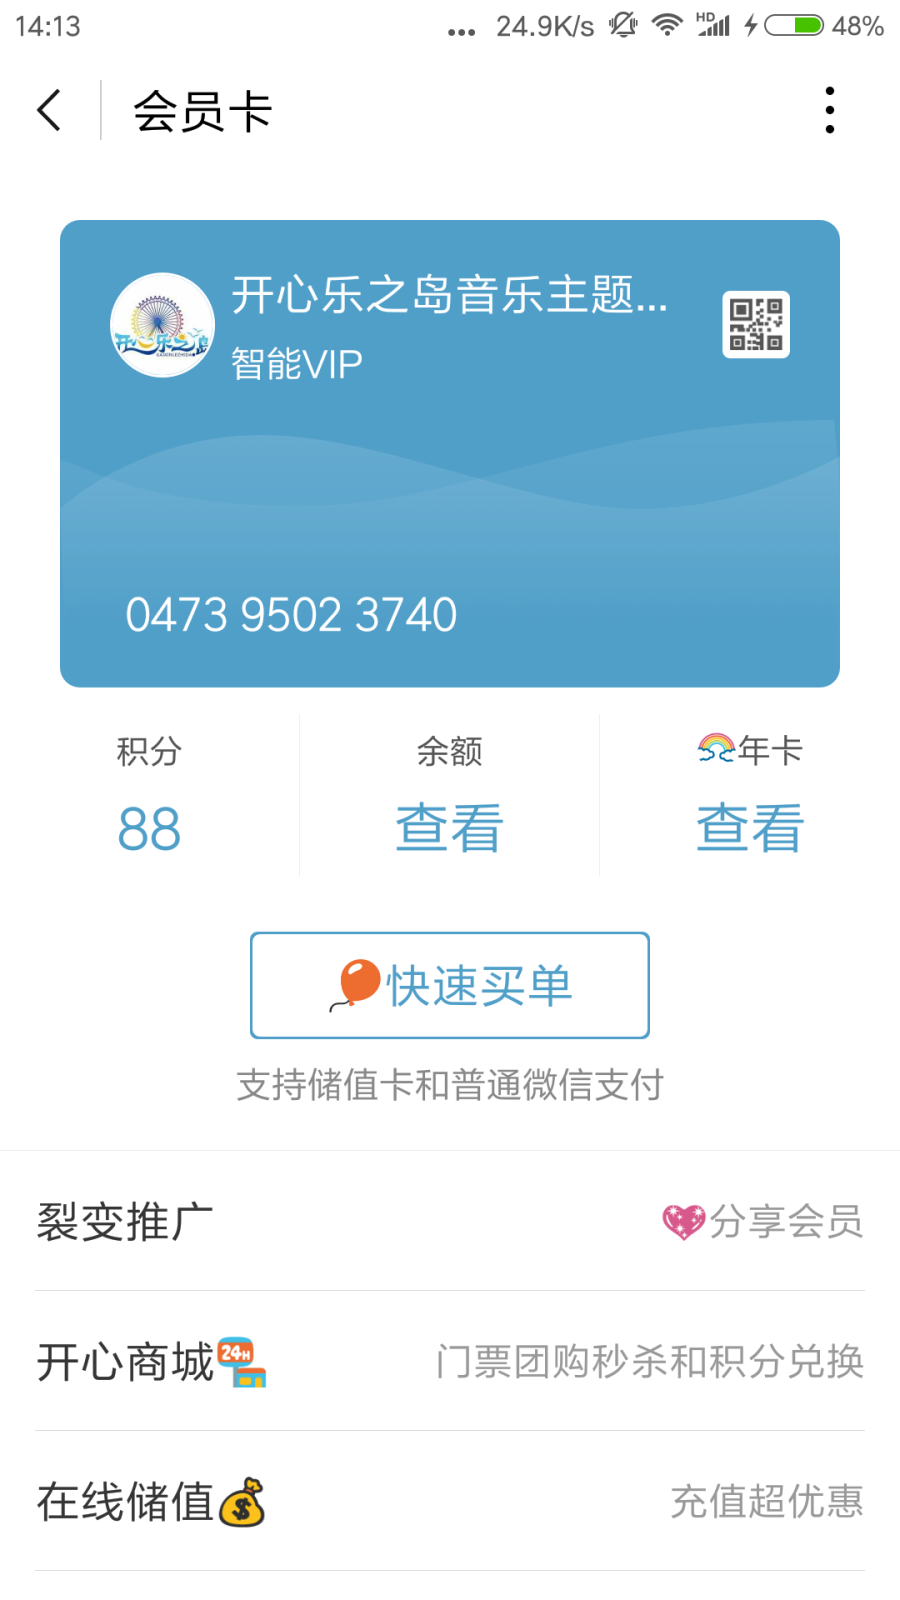 Screenshot_2018-08-27-14-13-05-583_com.tencent.mm.png